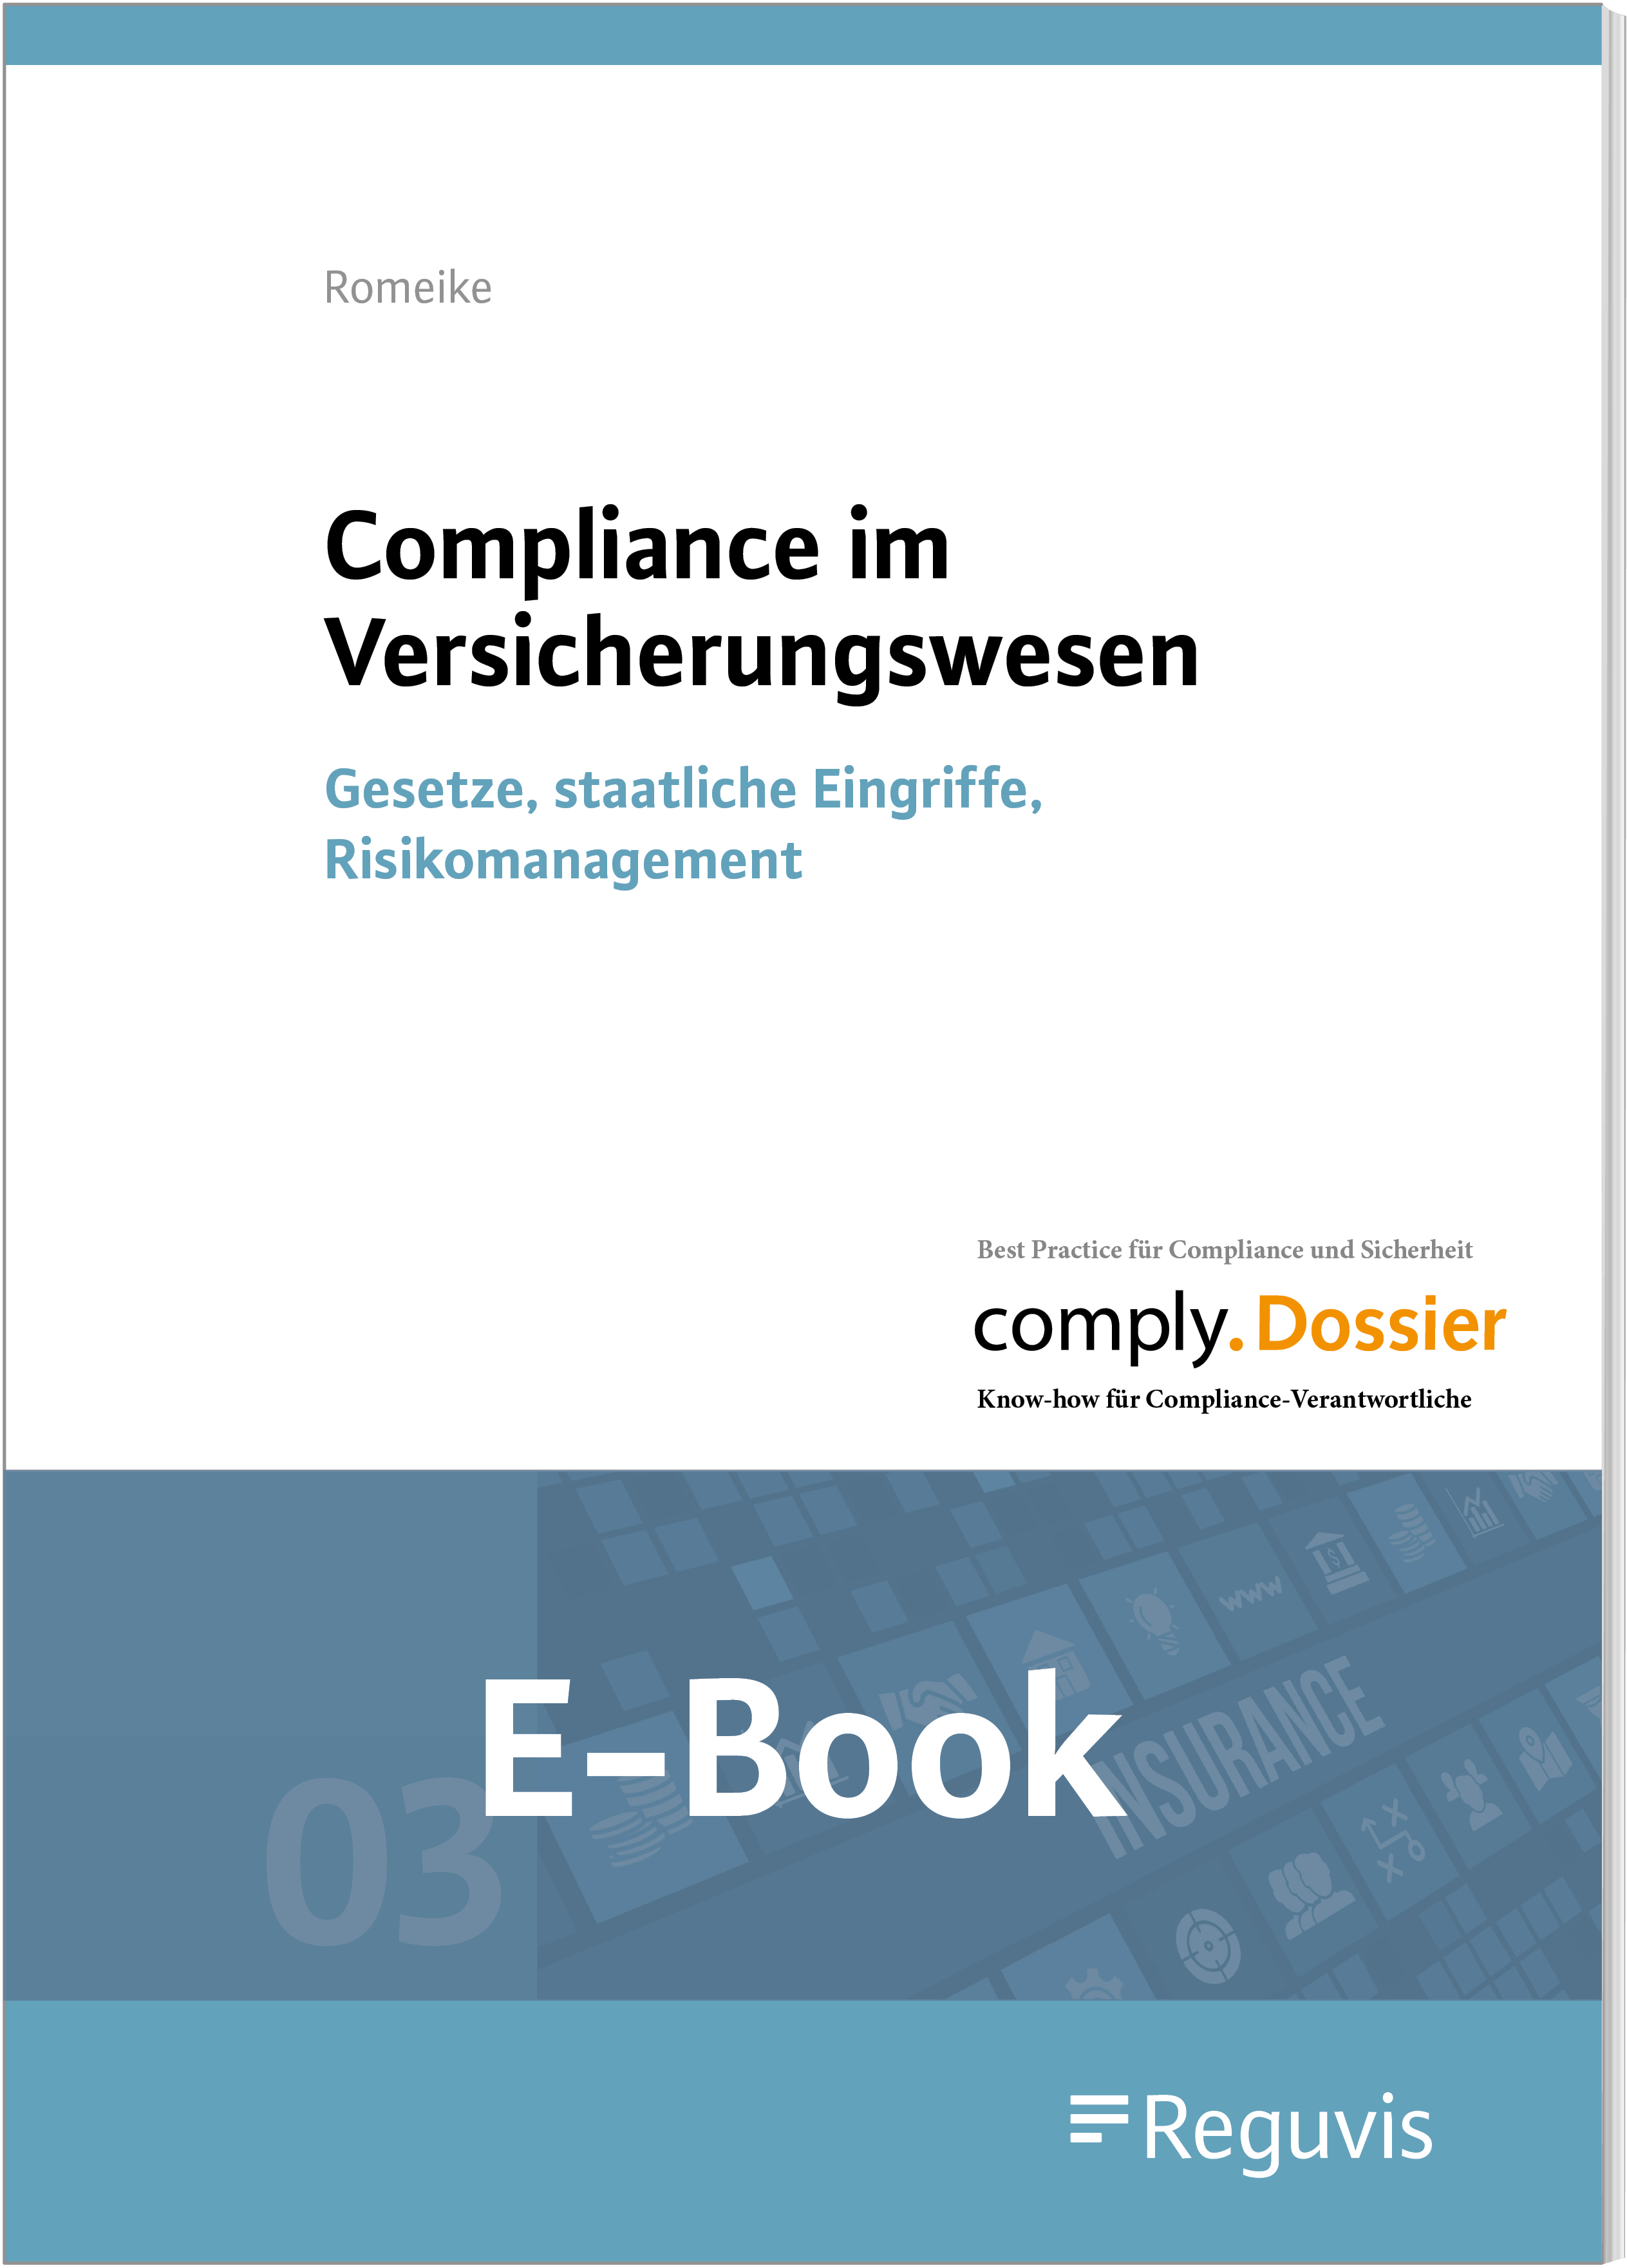 Romeike; Compliance im Versicherungswesen E-Book